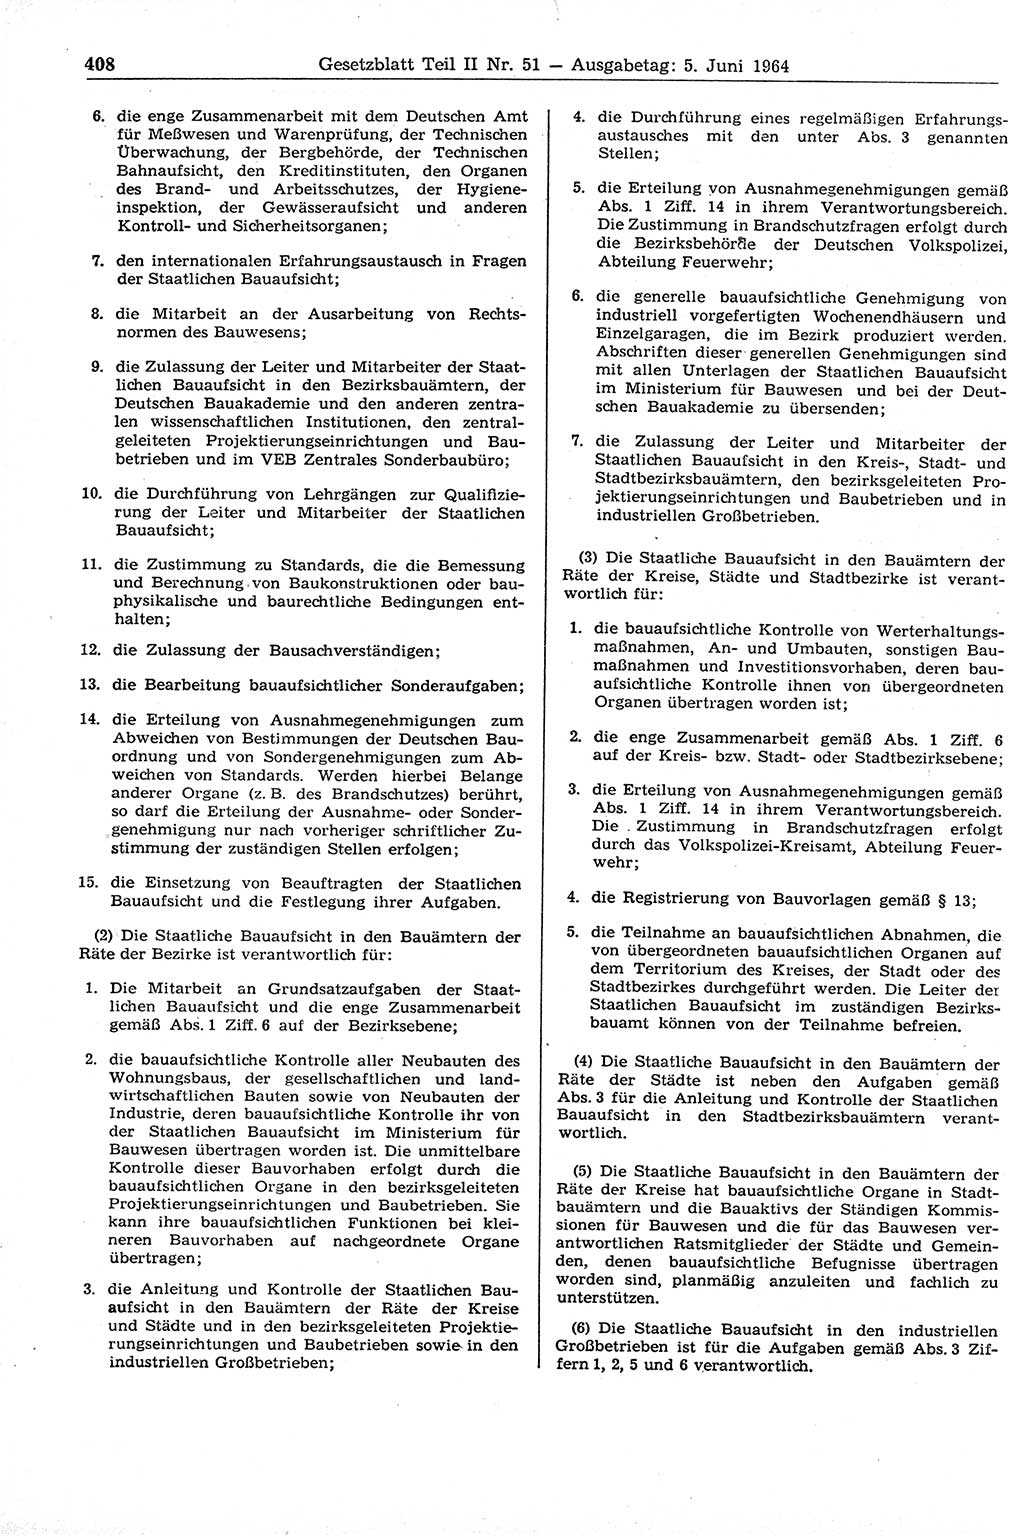 Gesetzblatt (GBl.) der Deutschen Demokratischen Republik (DDR) Teil ⅠⅠ 1964, Seite 408 (GBl. DDR ⅠⅠ 1964, S. 408)